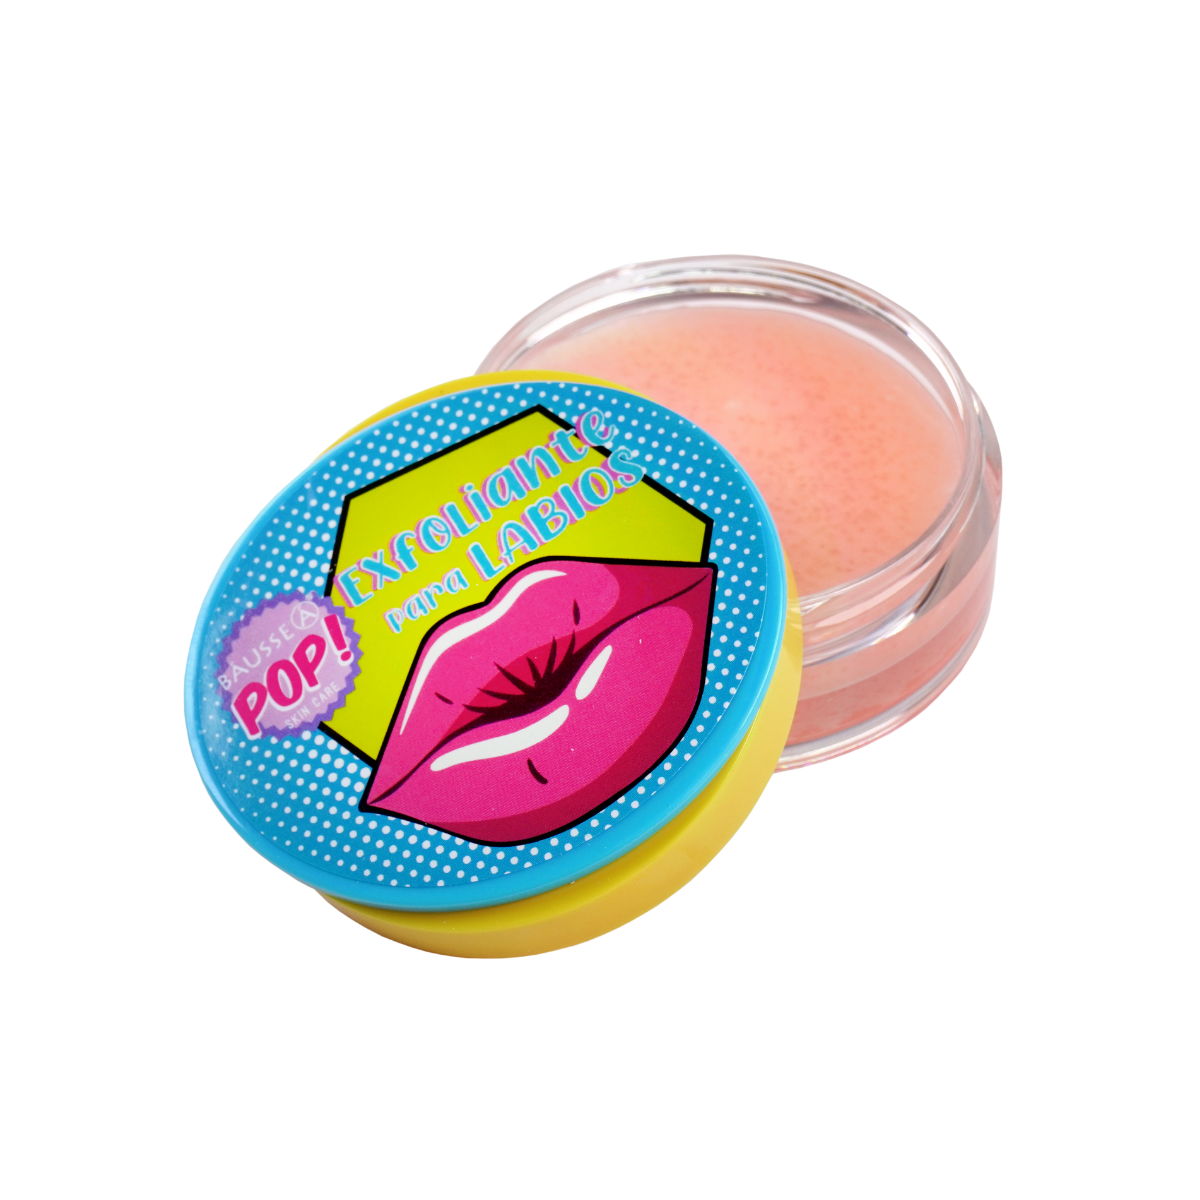 Exfoliante para labios BCG010